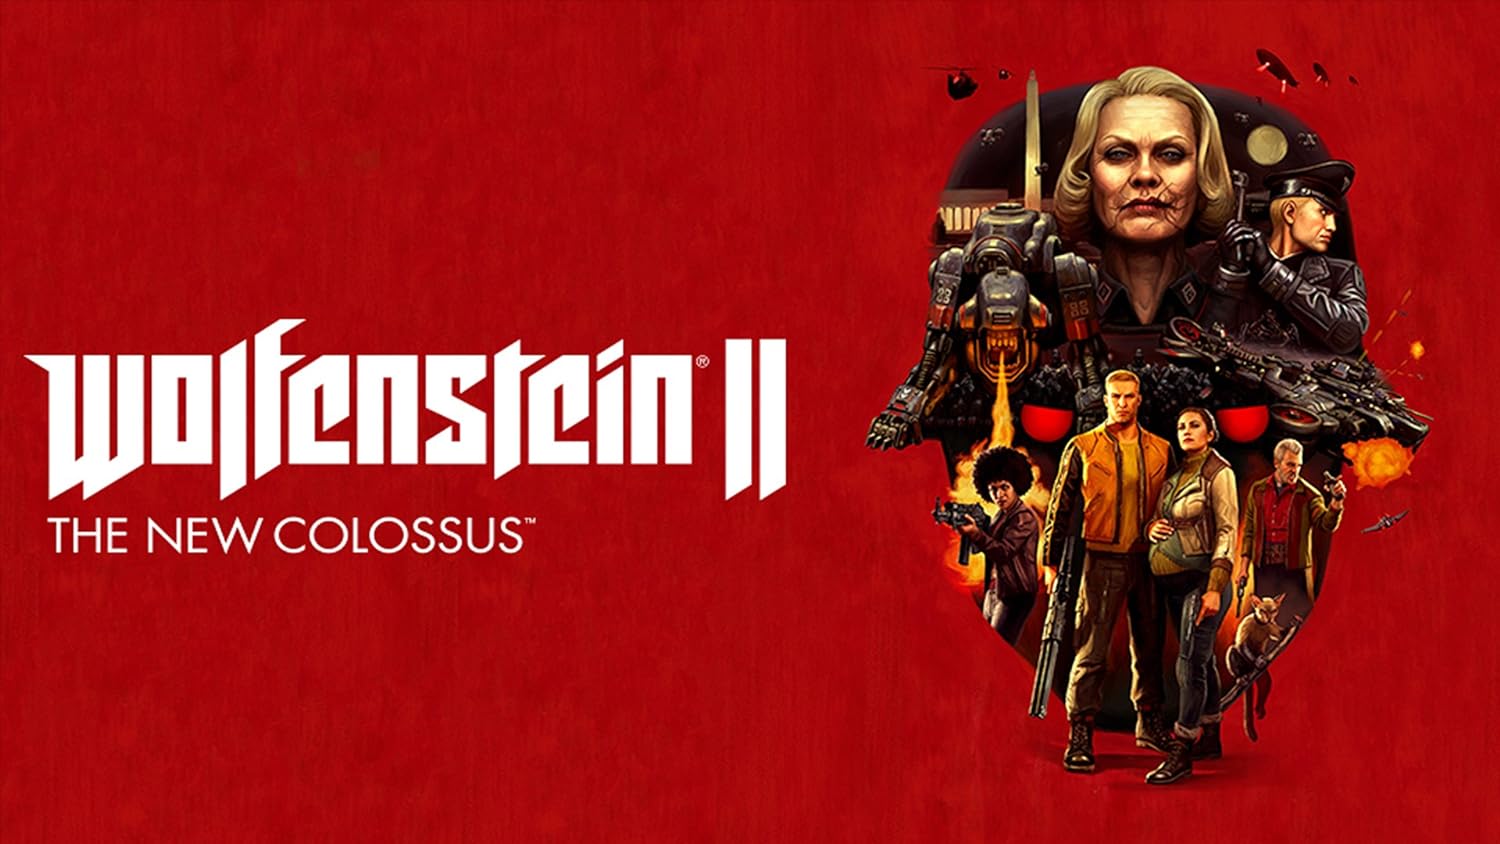 Вольфенштайн the new colossus. Вольфенштайн 2 the New Colossus. Wolfenstein II: the New Colossus обложка. Wolfenstein II: the New Colossus обложка ps4. Wolfenstein the New Colossus Постер.